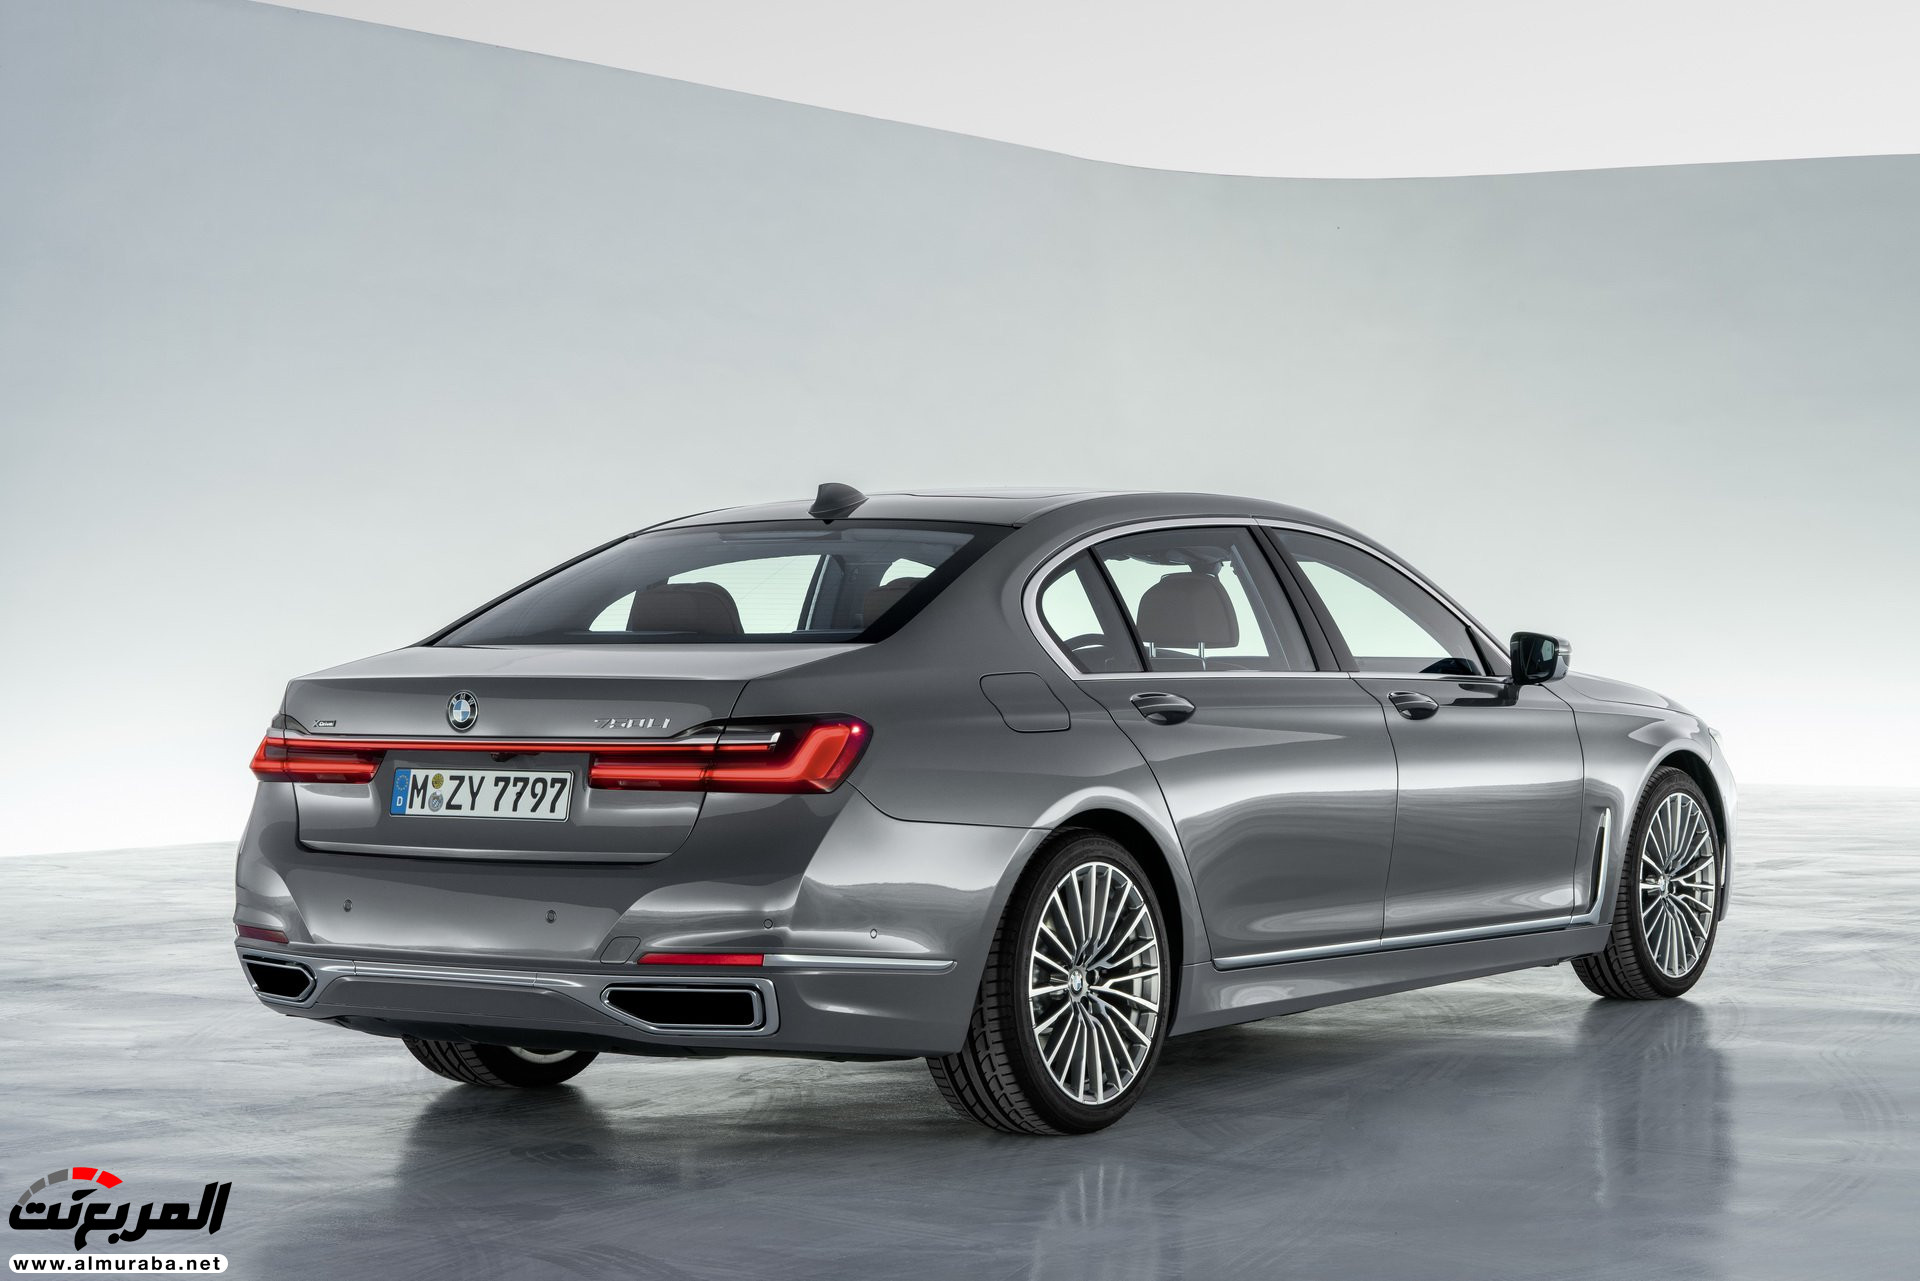 بي ام دبليو الفئة السابعة 2020 المحدثة تكشف نفسها رسمياً "صور ومواصفات" BMW 7 Series 229